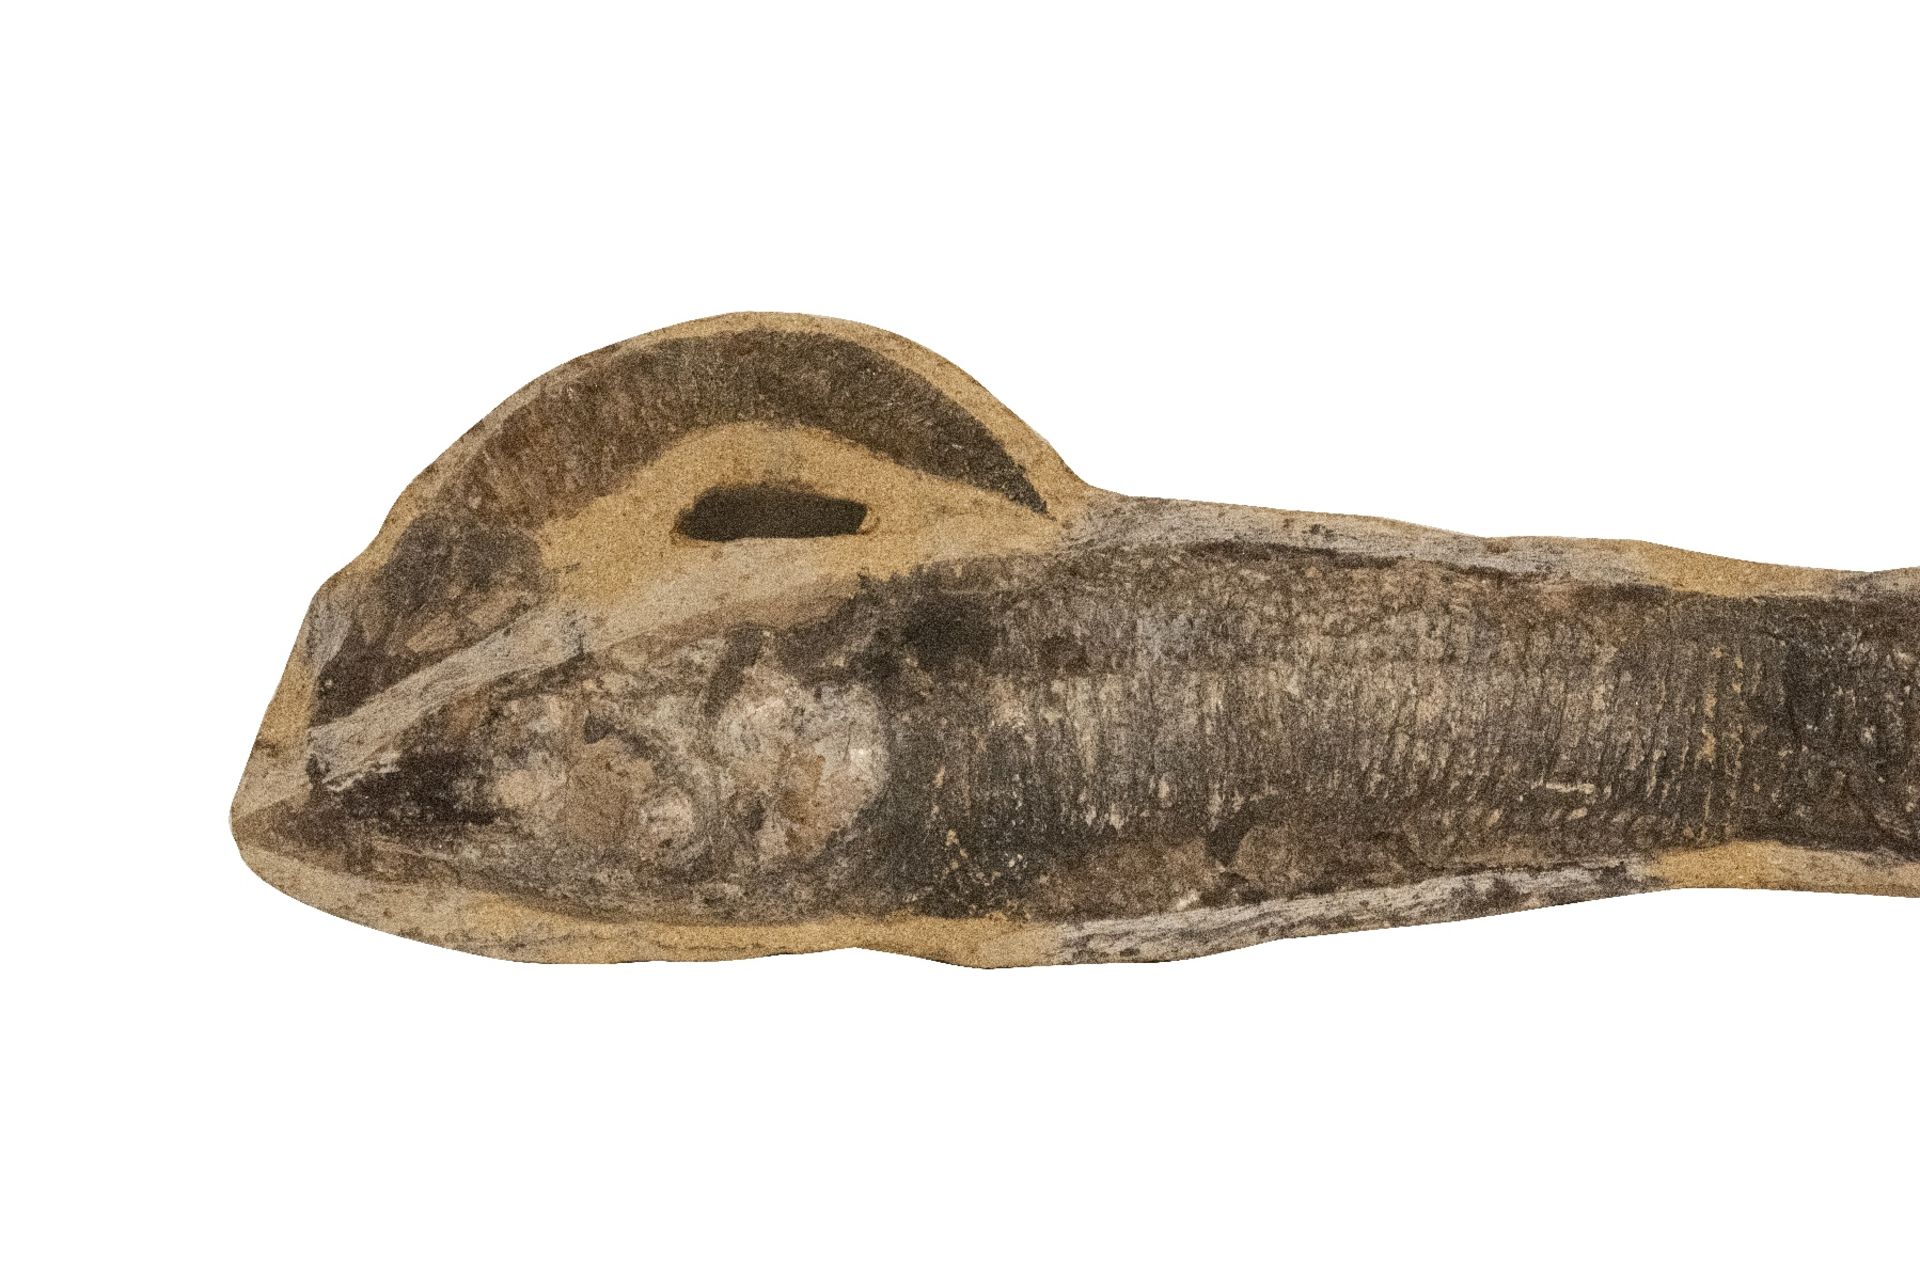 Versteinerter Fisch | Fossilized Fish - Image 3 of 5